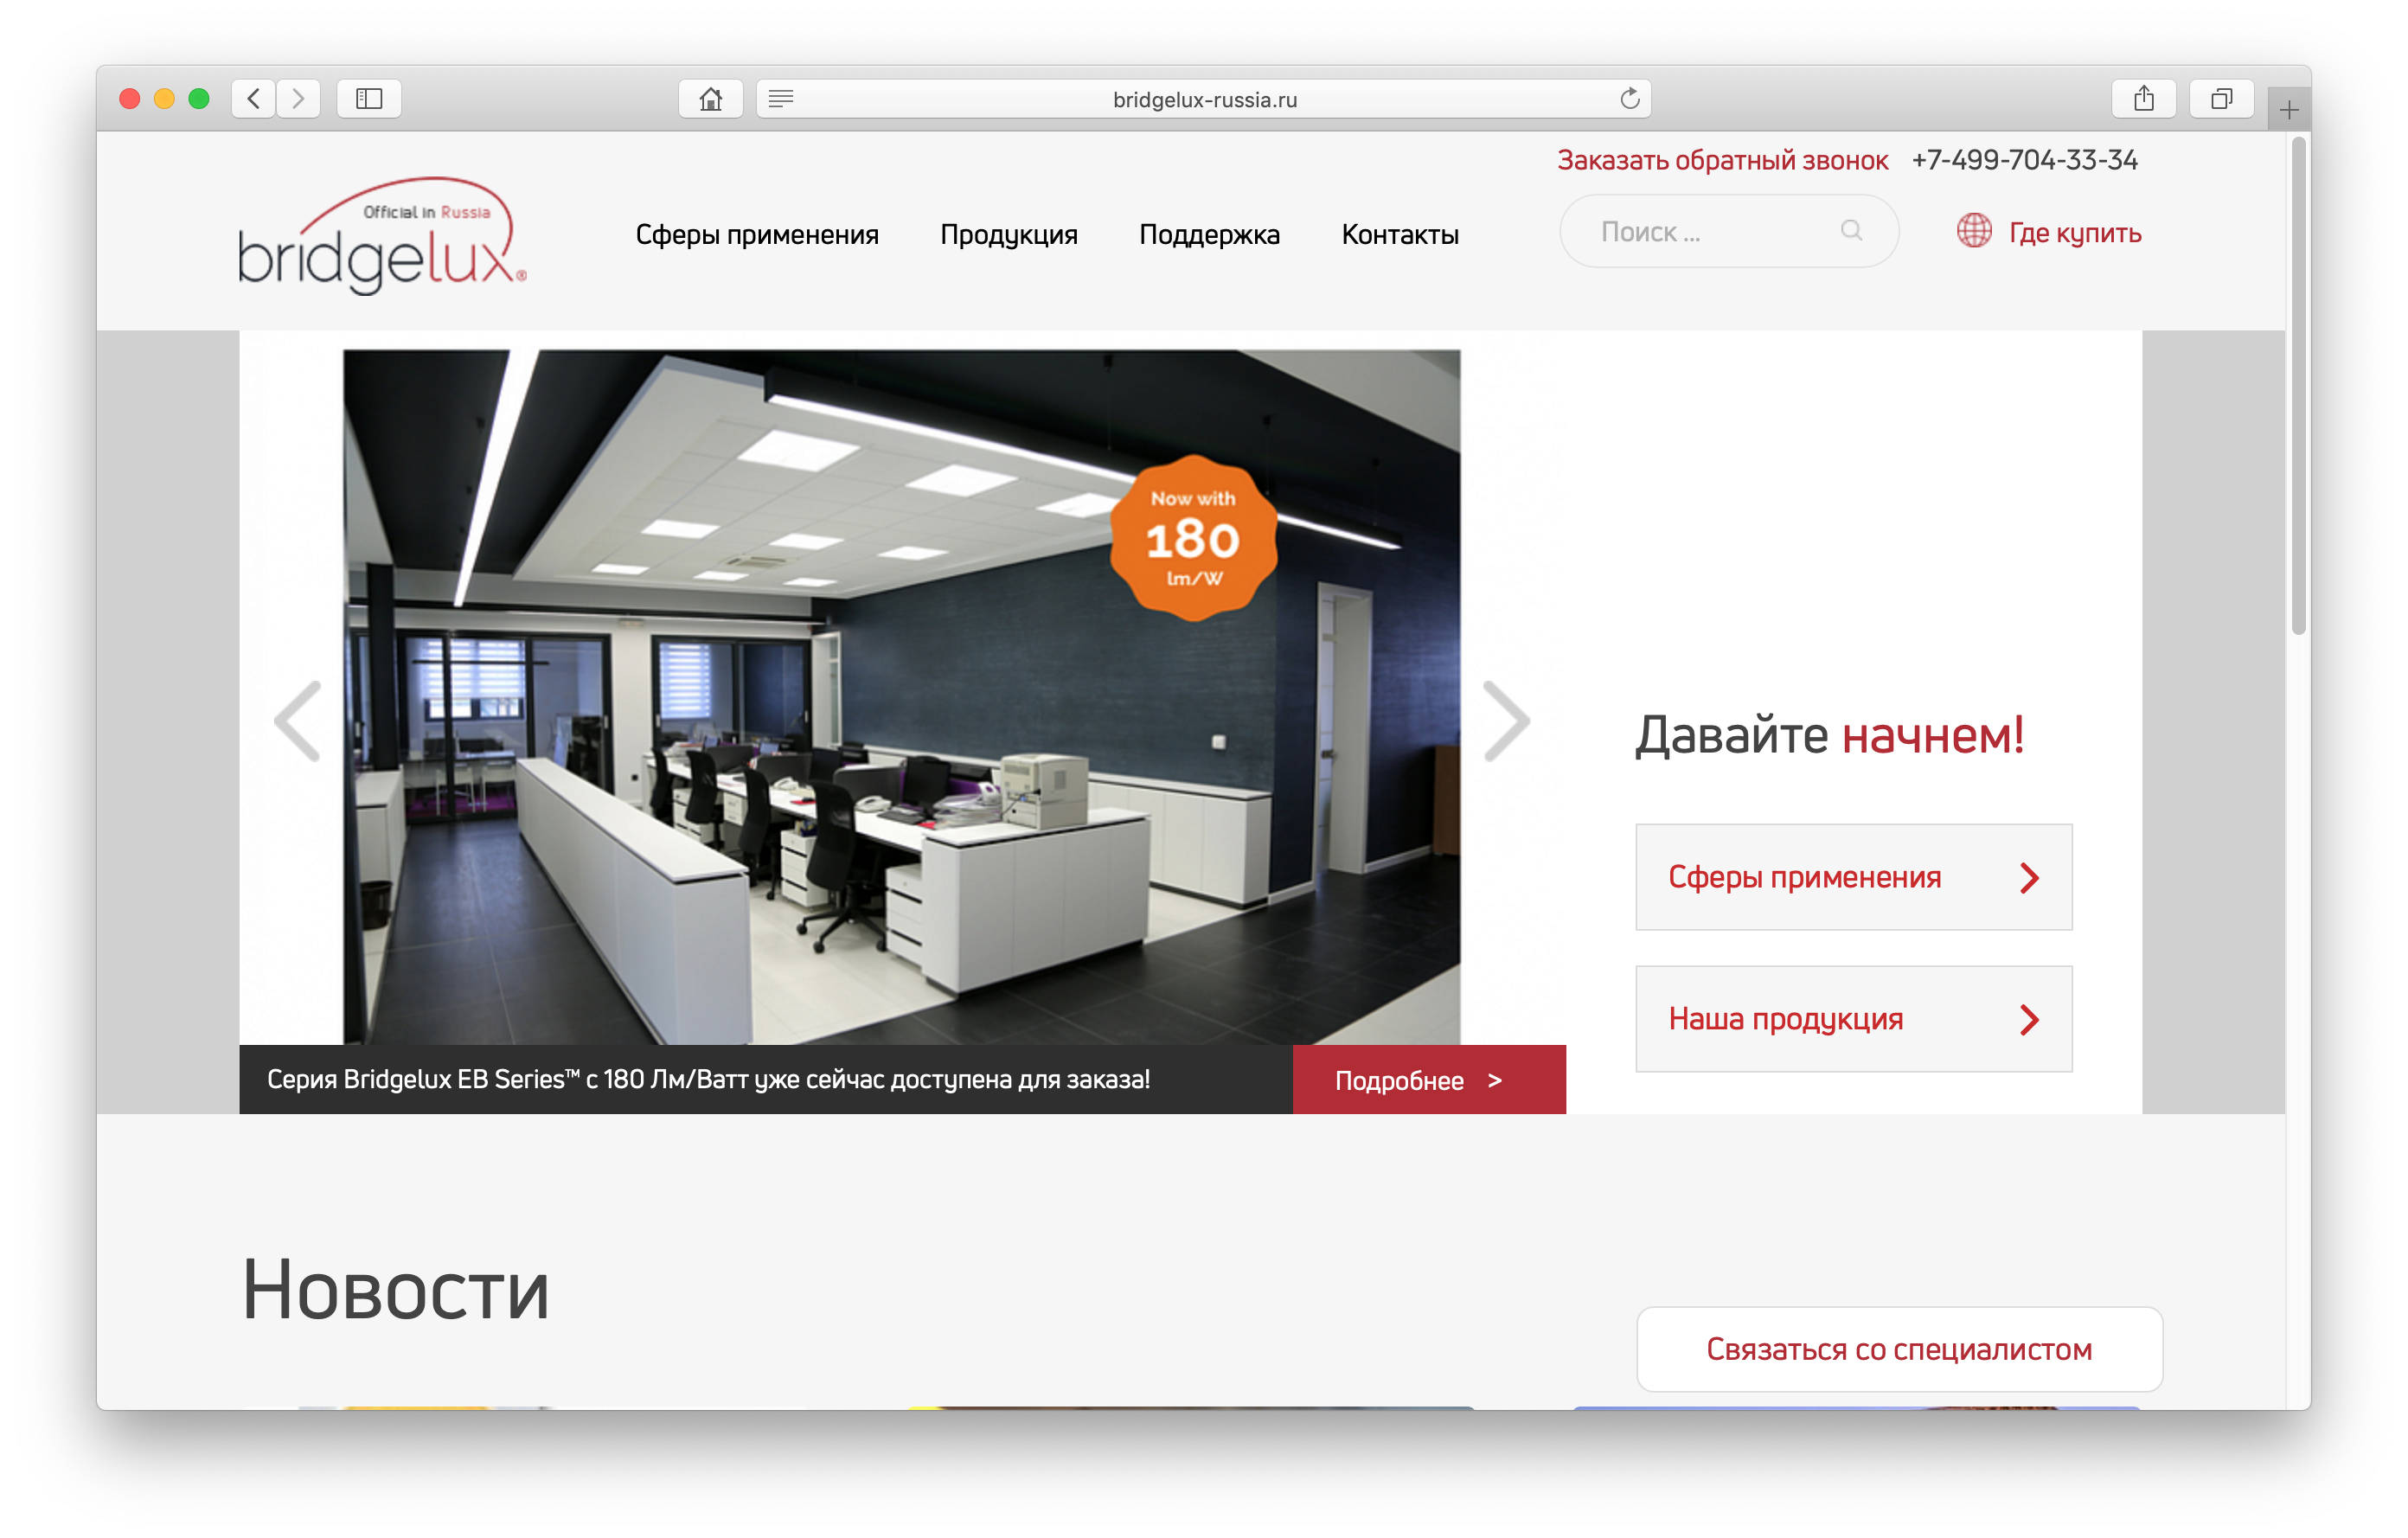 Сайт бренда BridgeLux в России